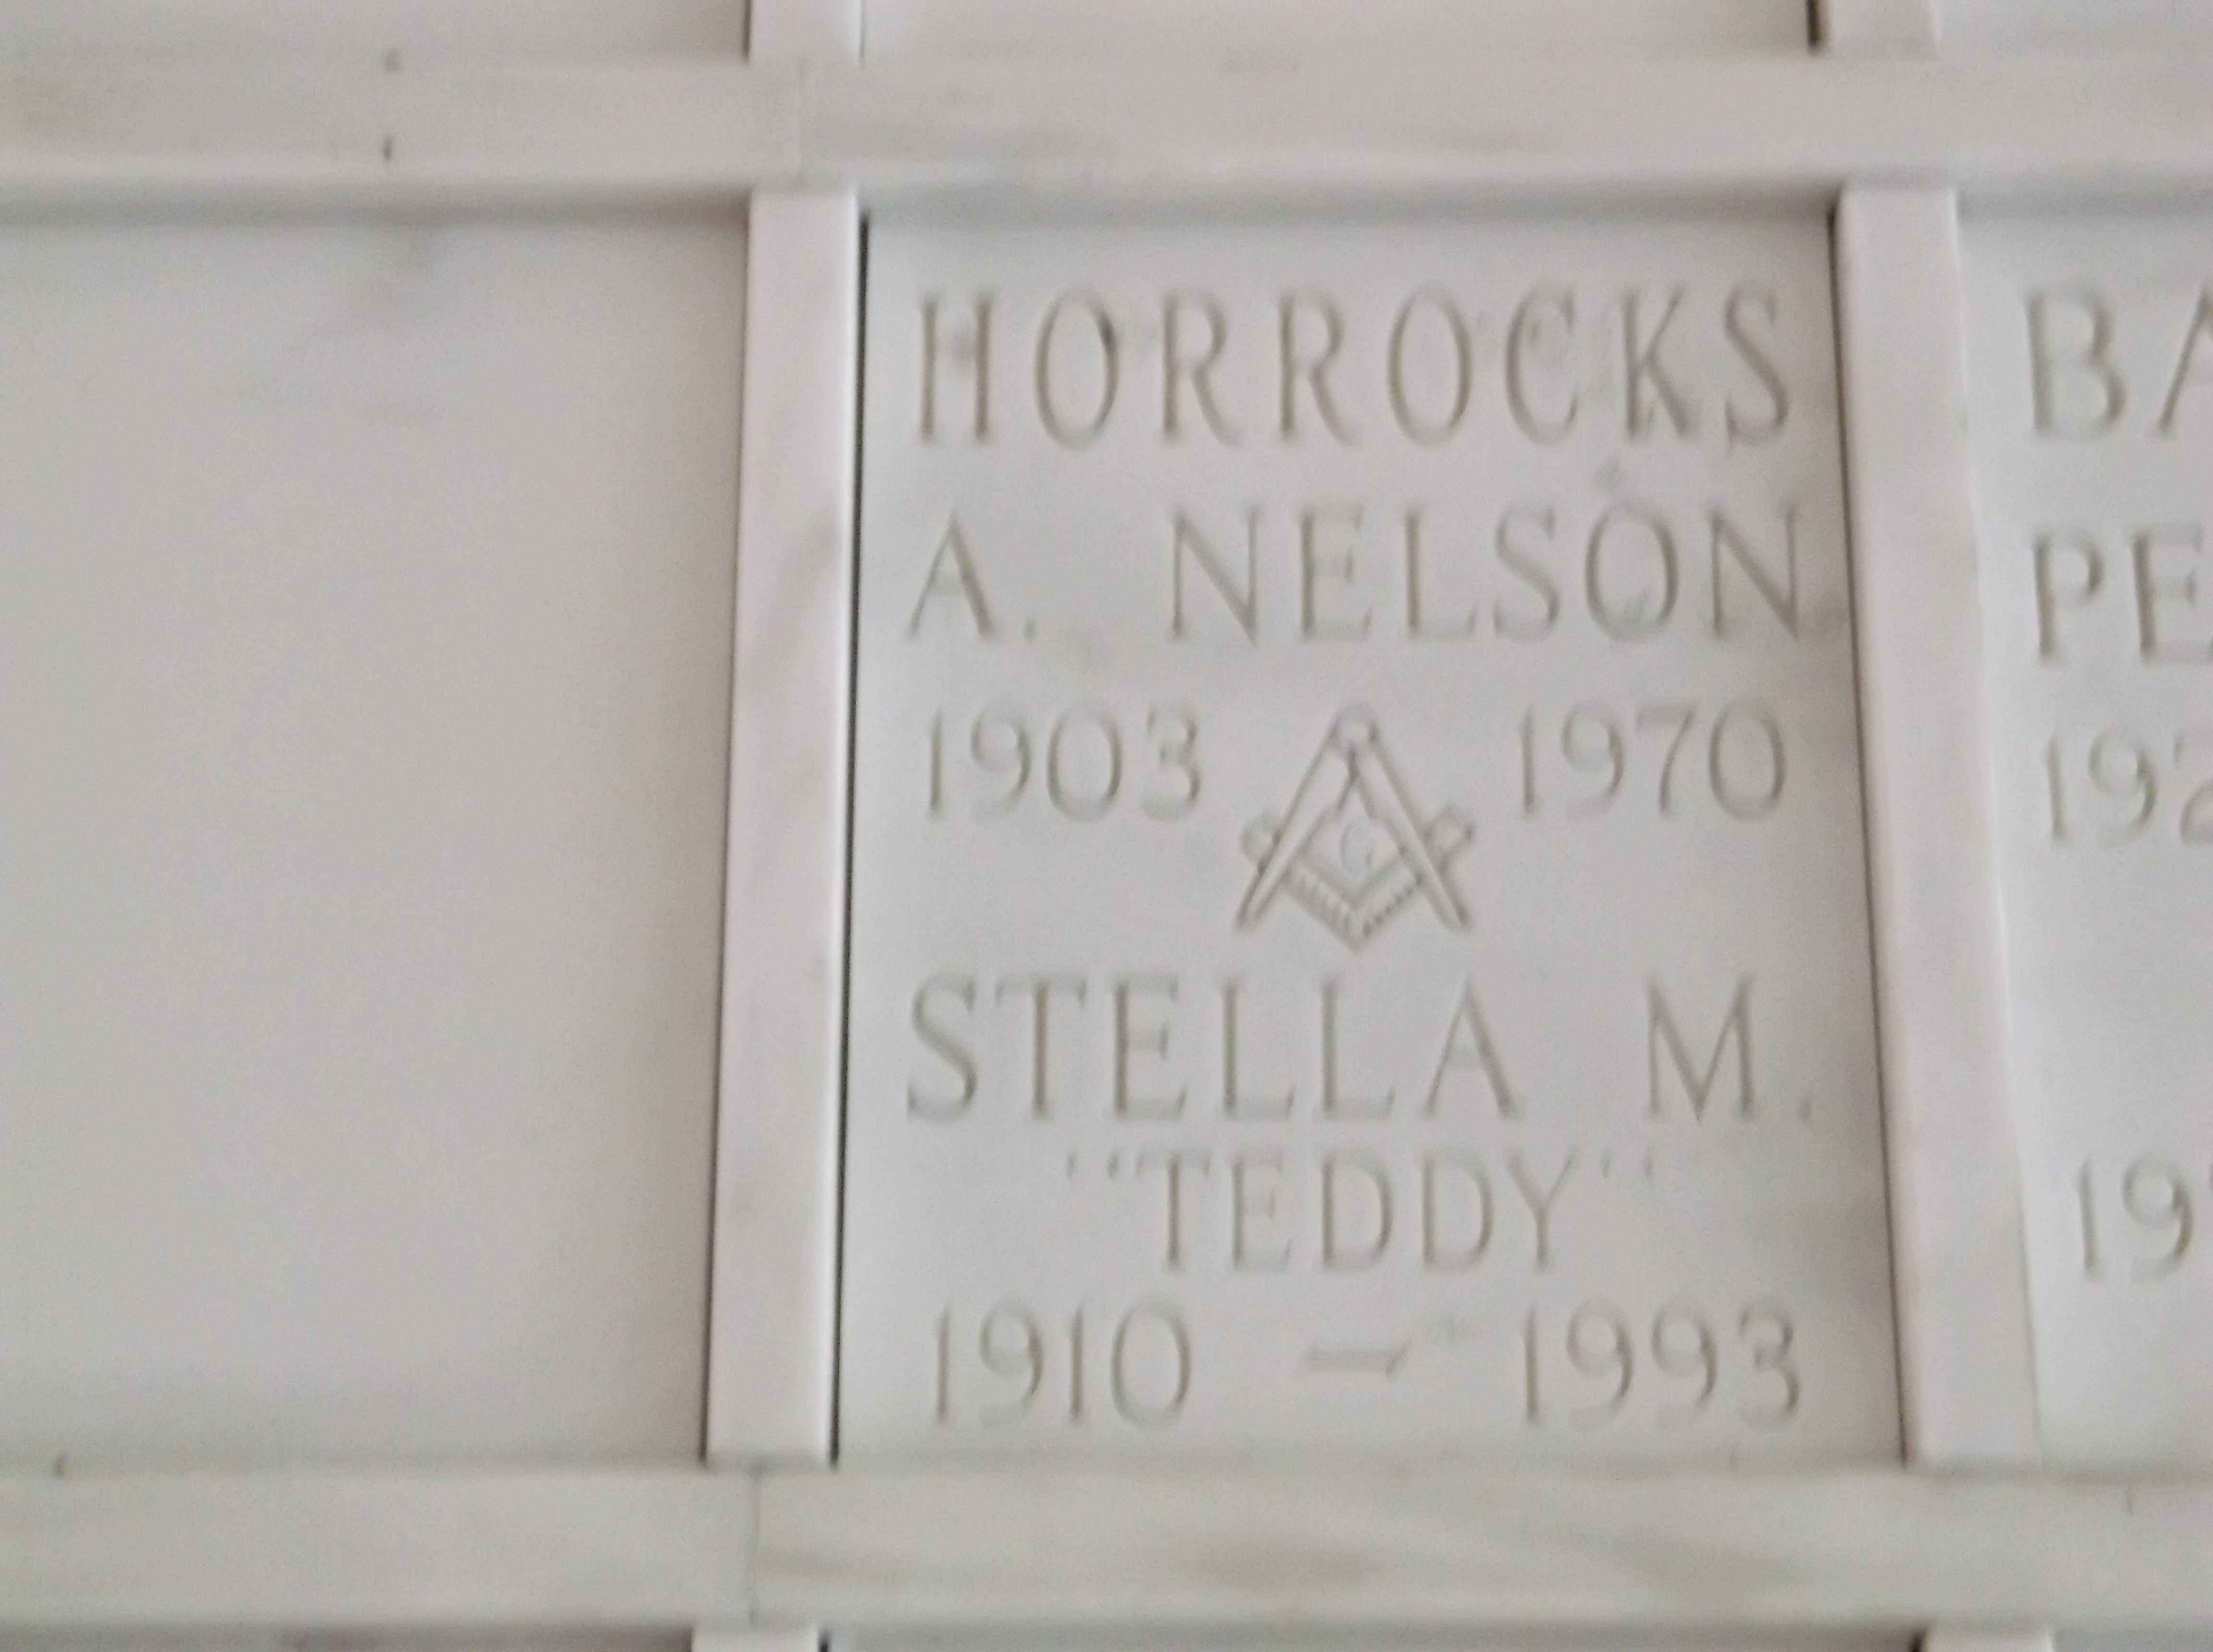 A Nelson Horrocks